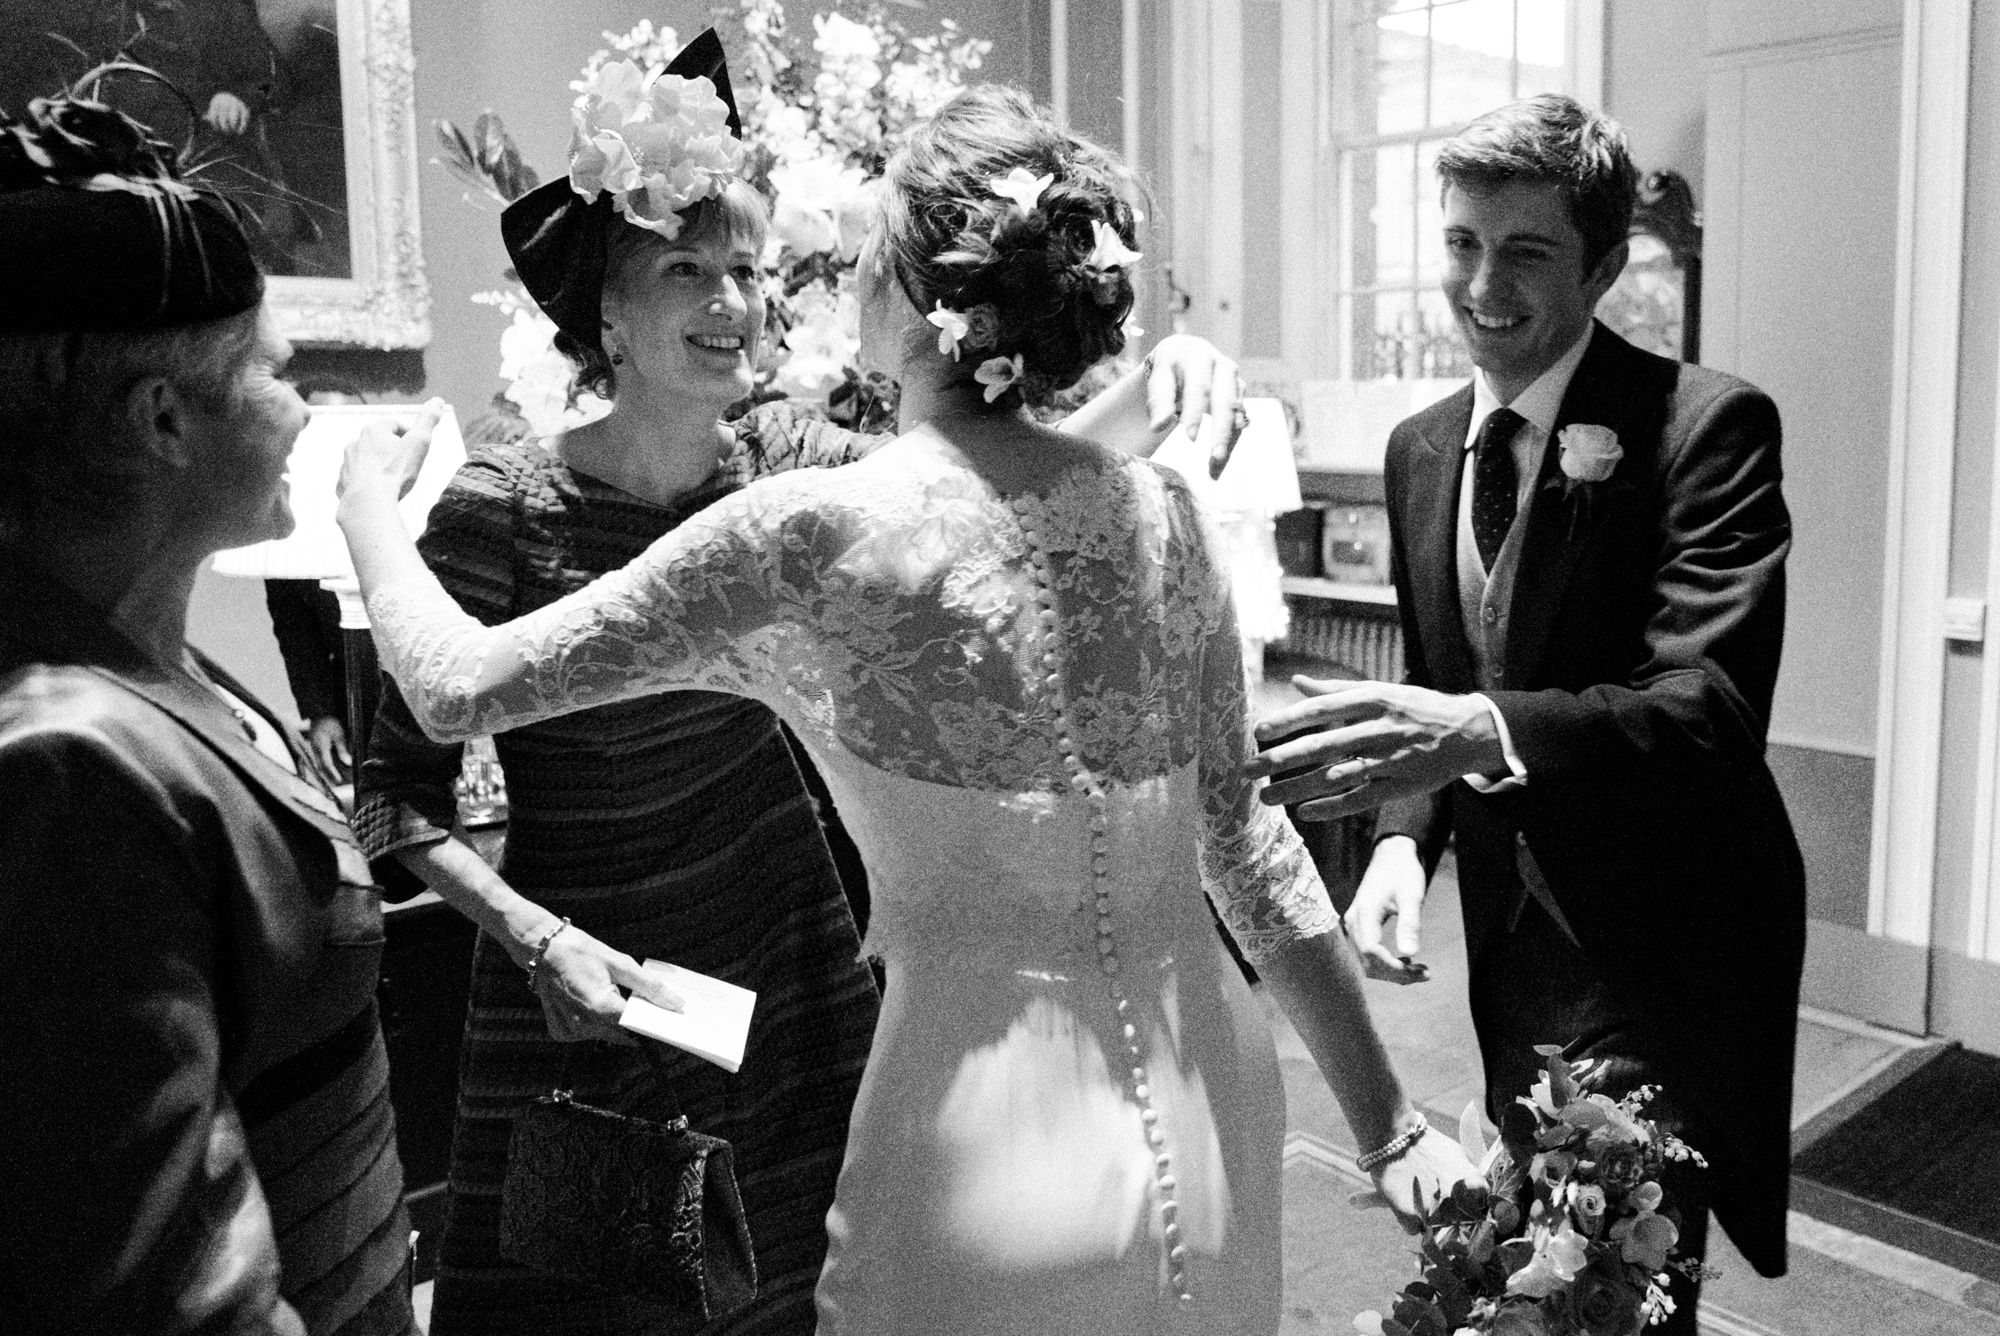 Bride receiving congratulations after wedding ceremony